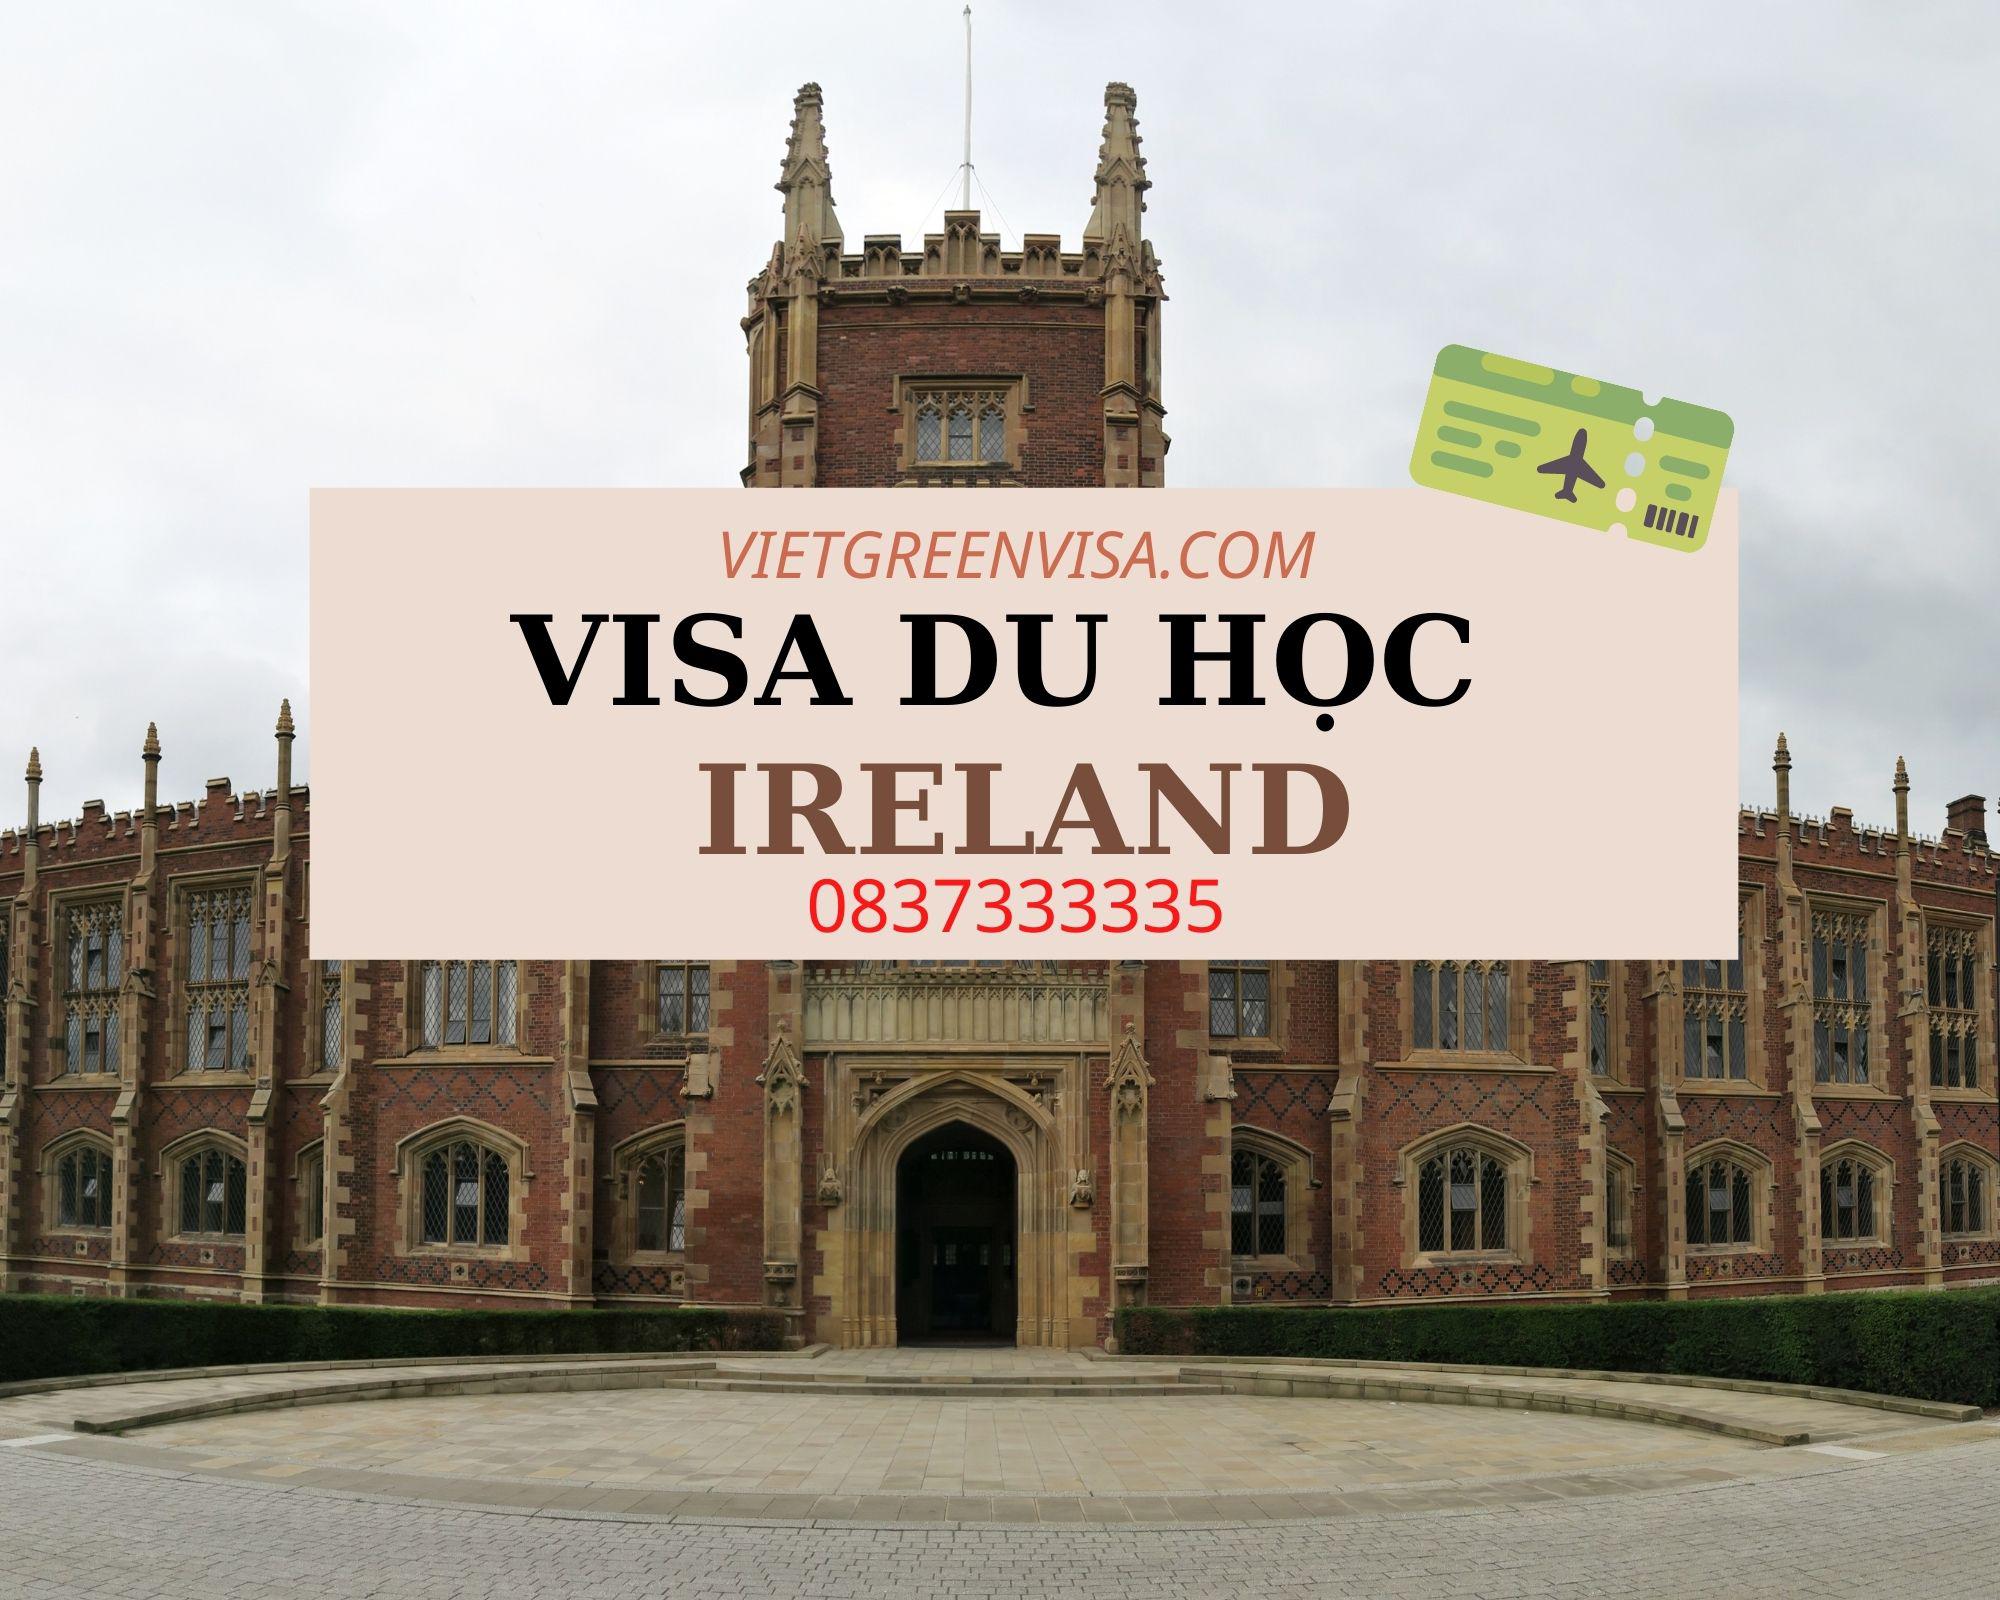 Hỗ trợ xin visa du học ở Ireland nhanh tốt nhất